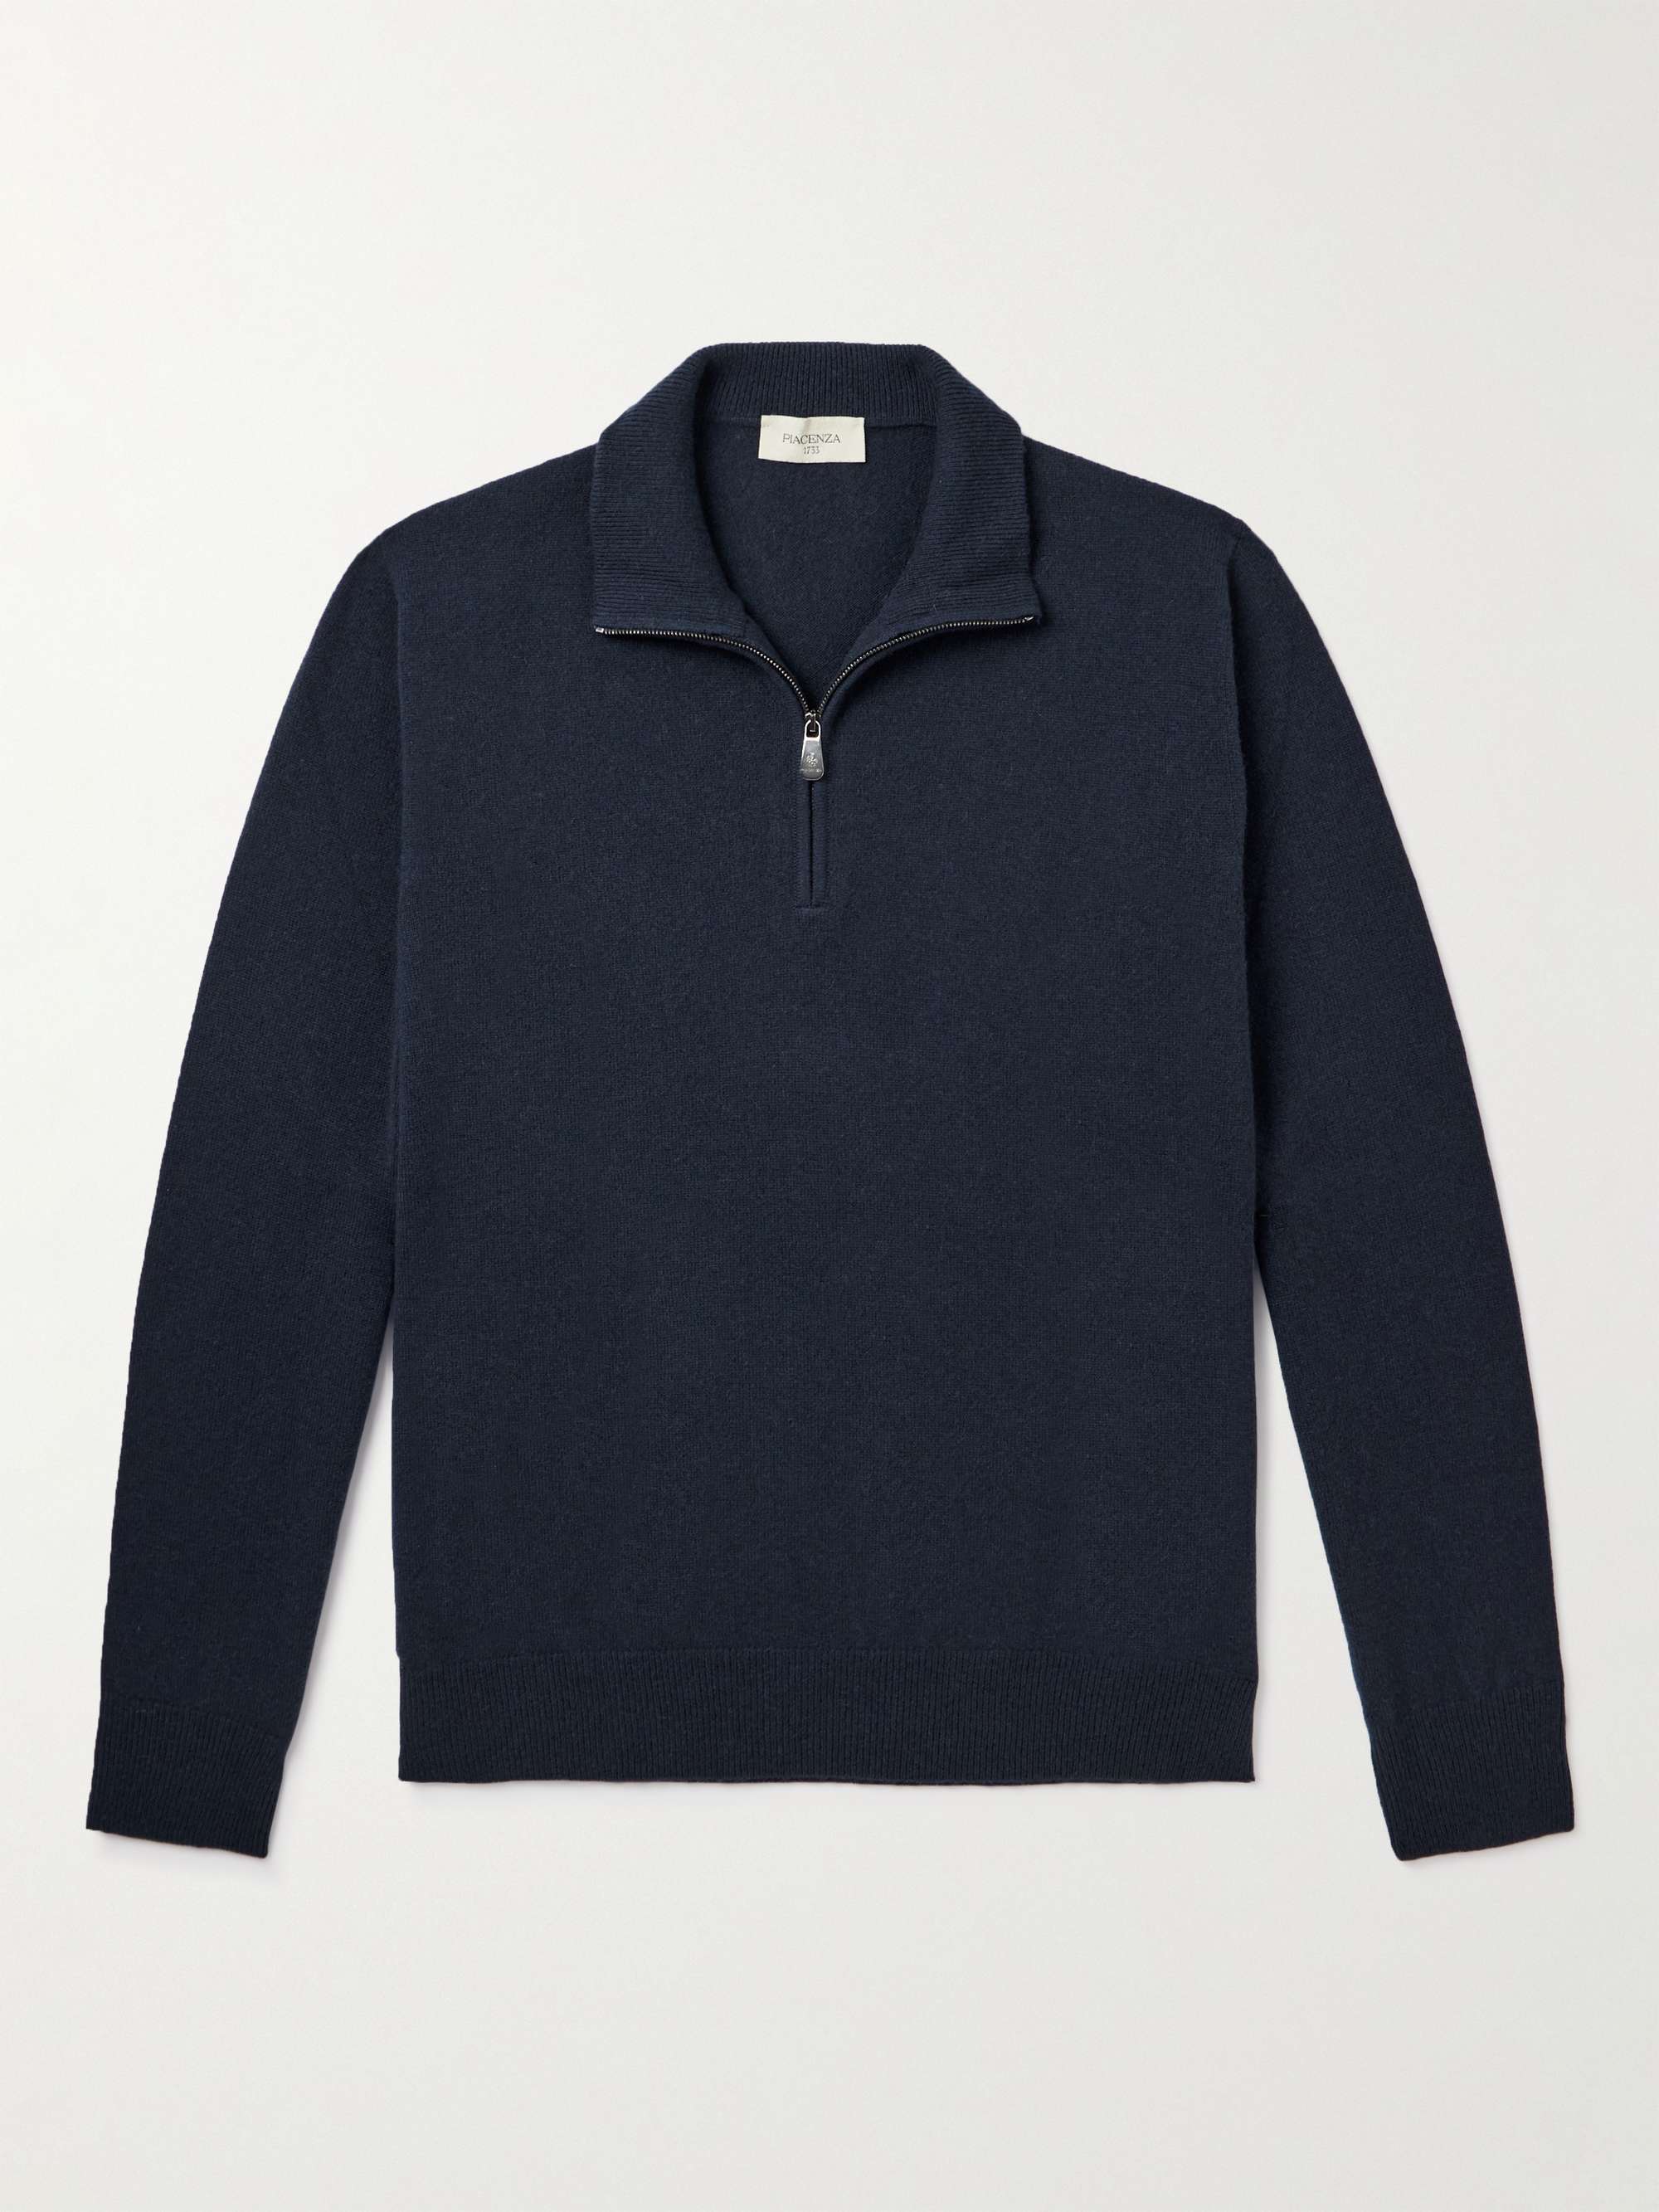 PIACENZA 1733 Lupetto Cashmere Half-Zip Sweater for Men | MR PORTER